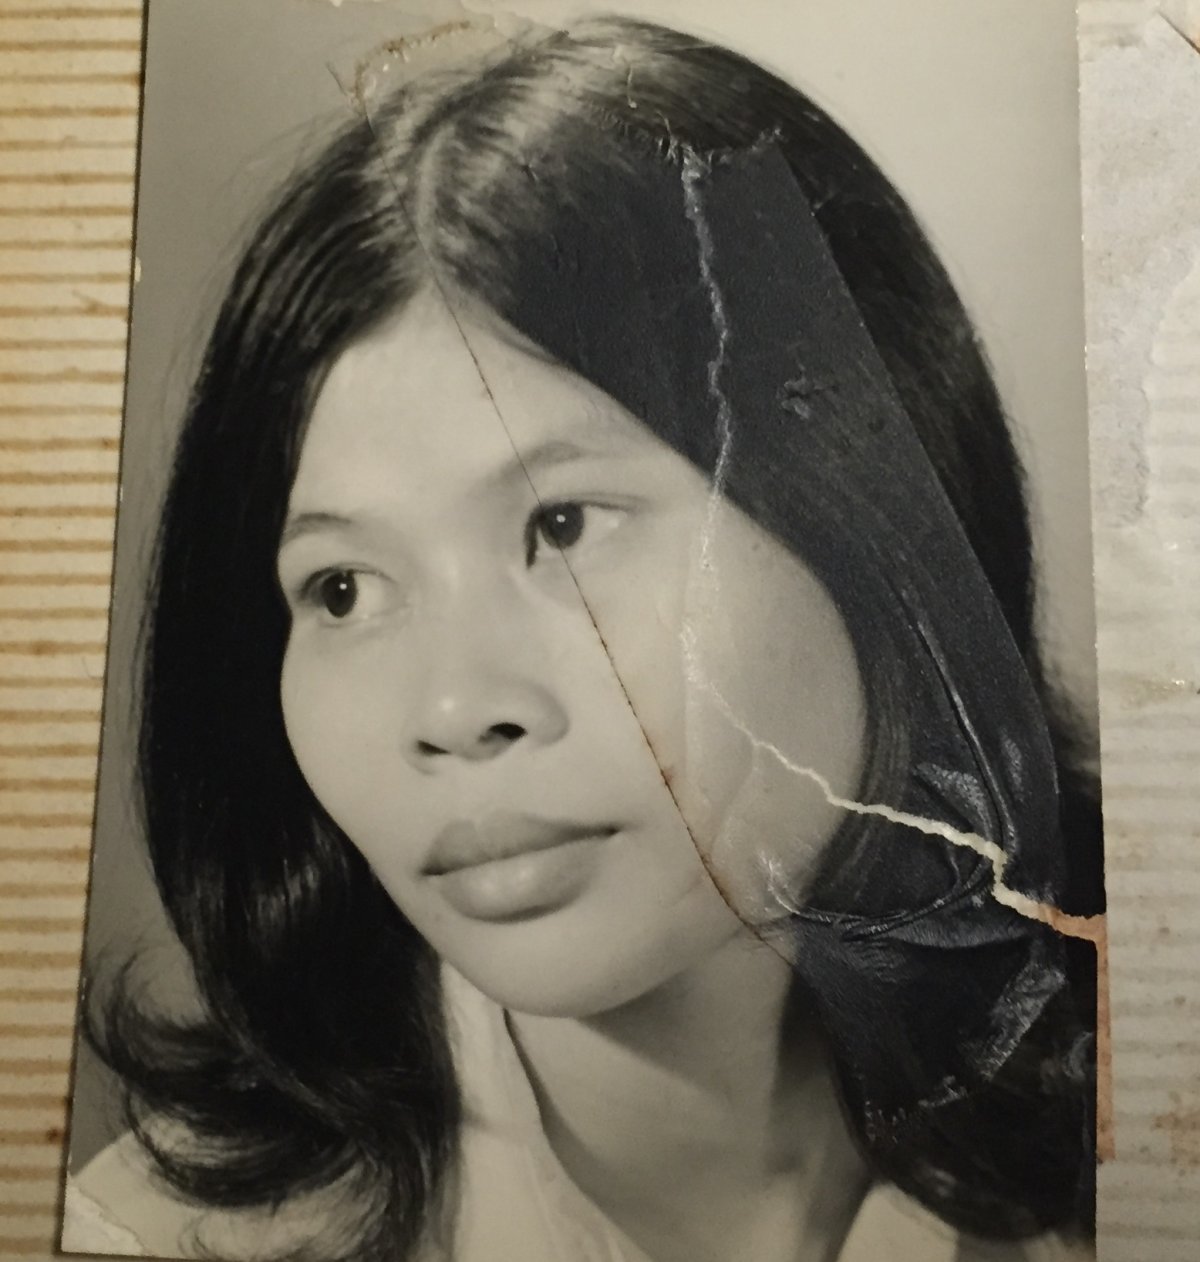 Tuyết who was a Vietnam "war bride"